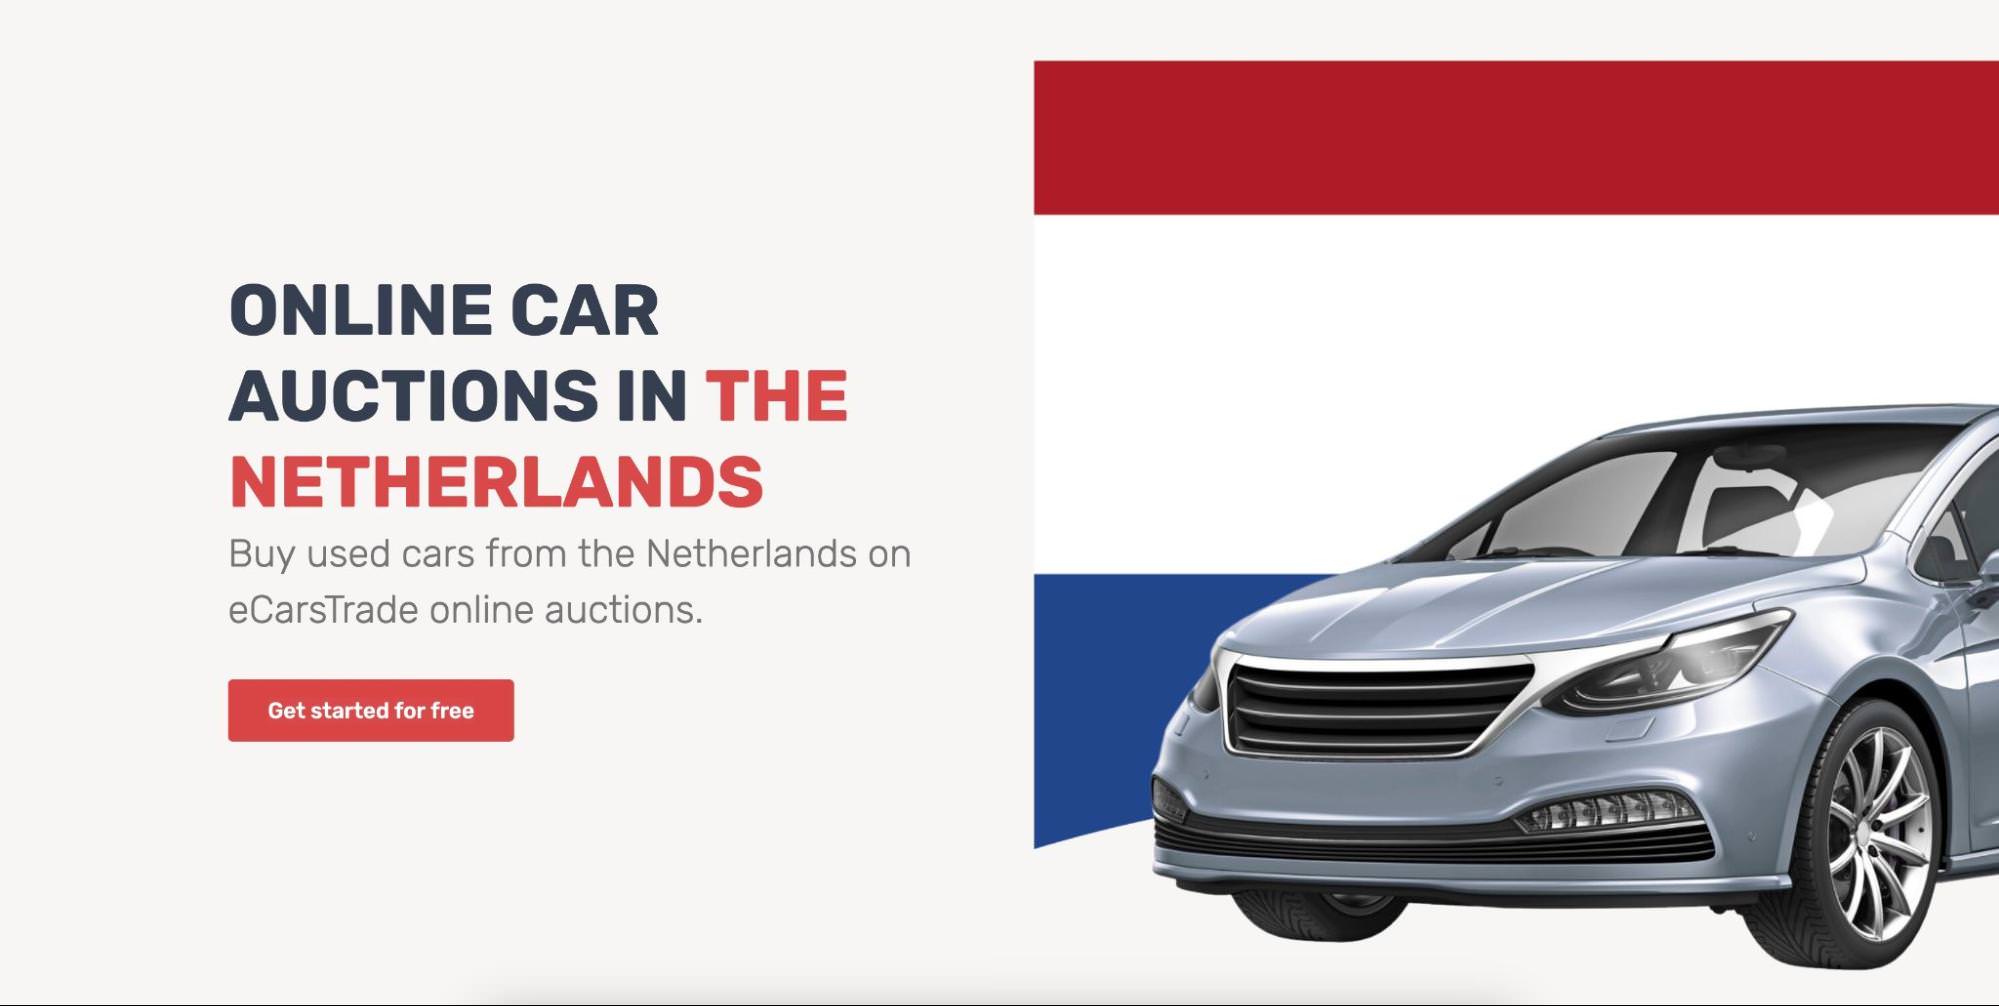 Sekce Hrdina na stránce Online aukce aut v Nizozemsku, která umožňuje obchodníkům nabízet ojetá nizozemská vozidla.